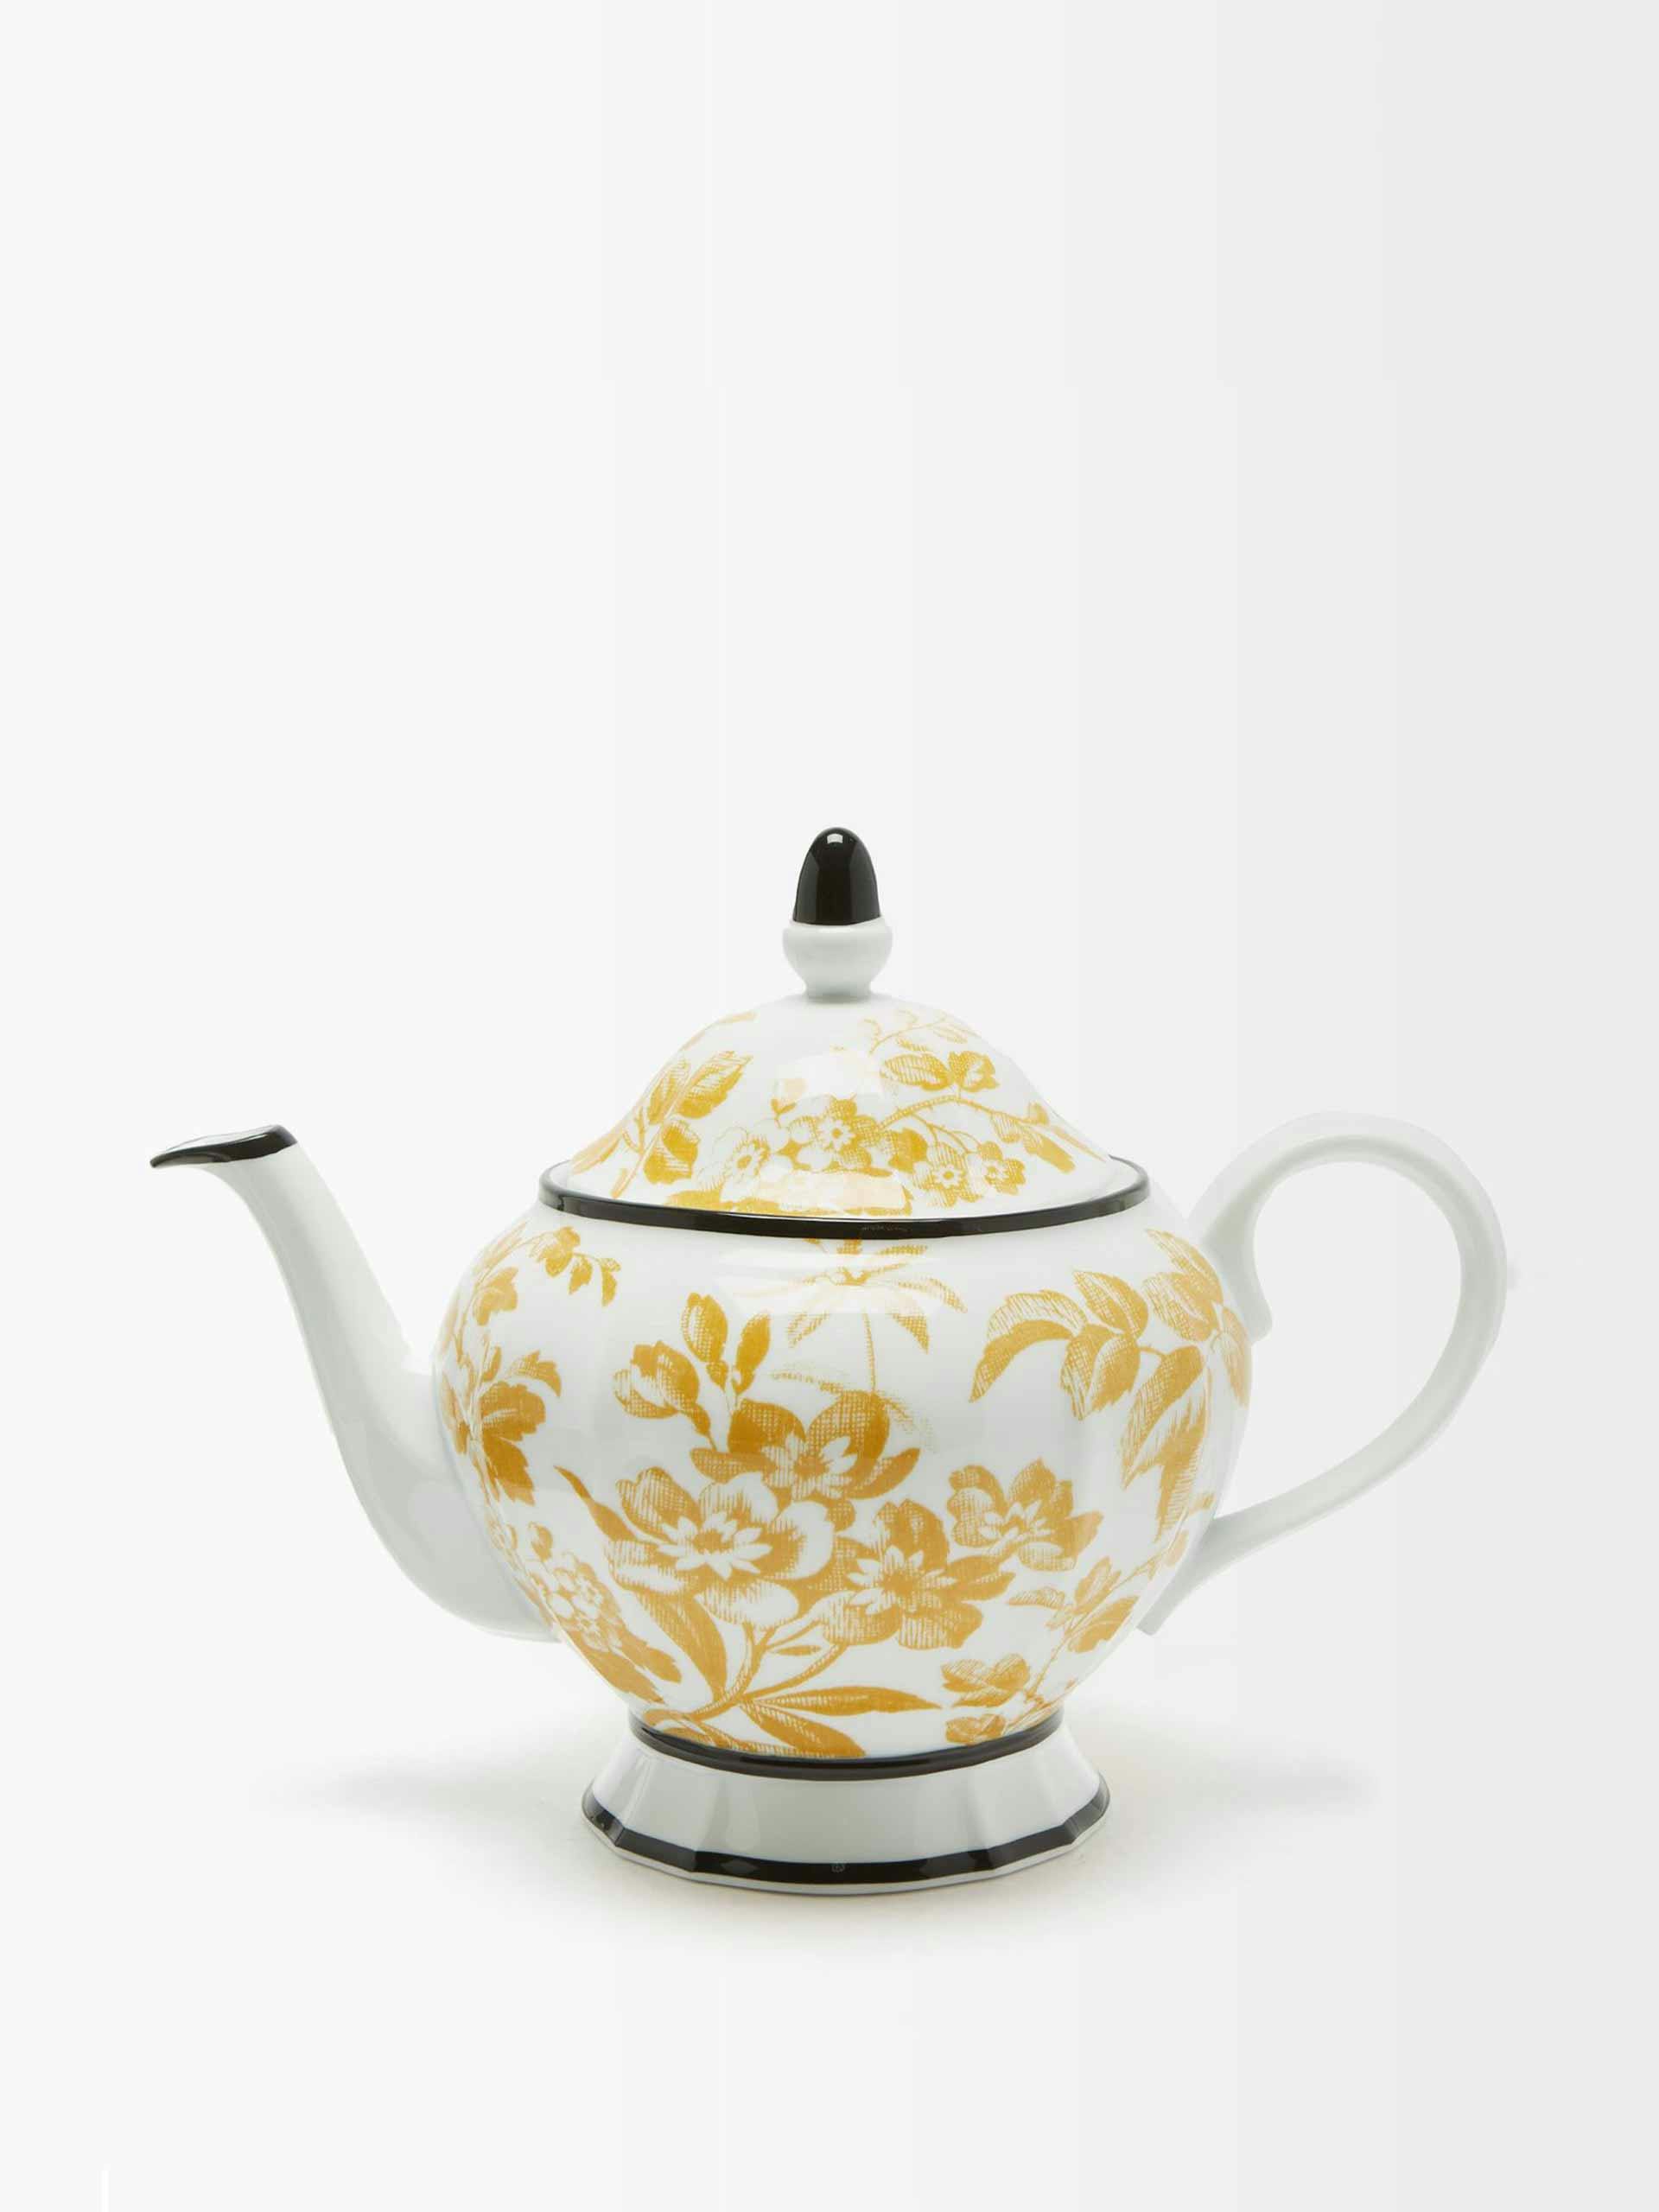 Floral porcelain teapot